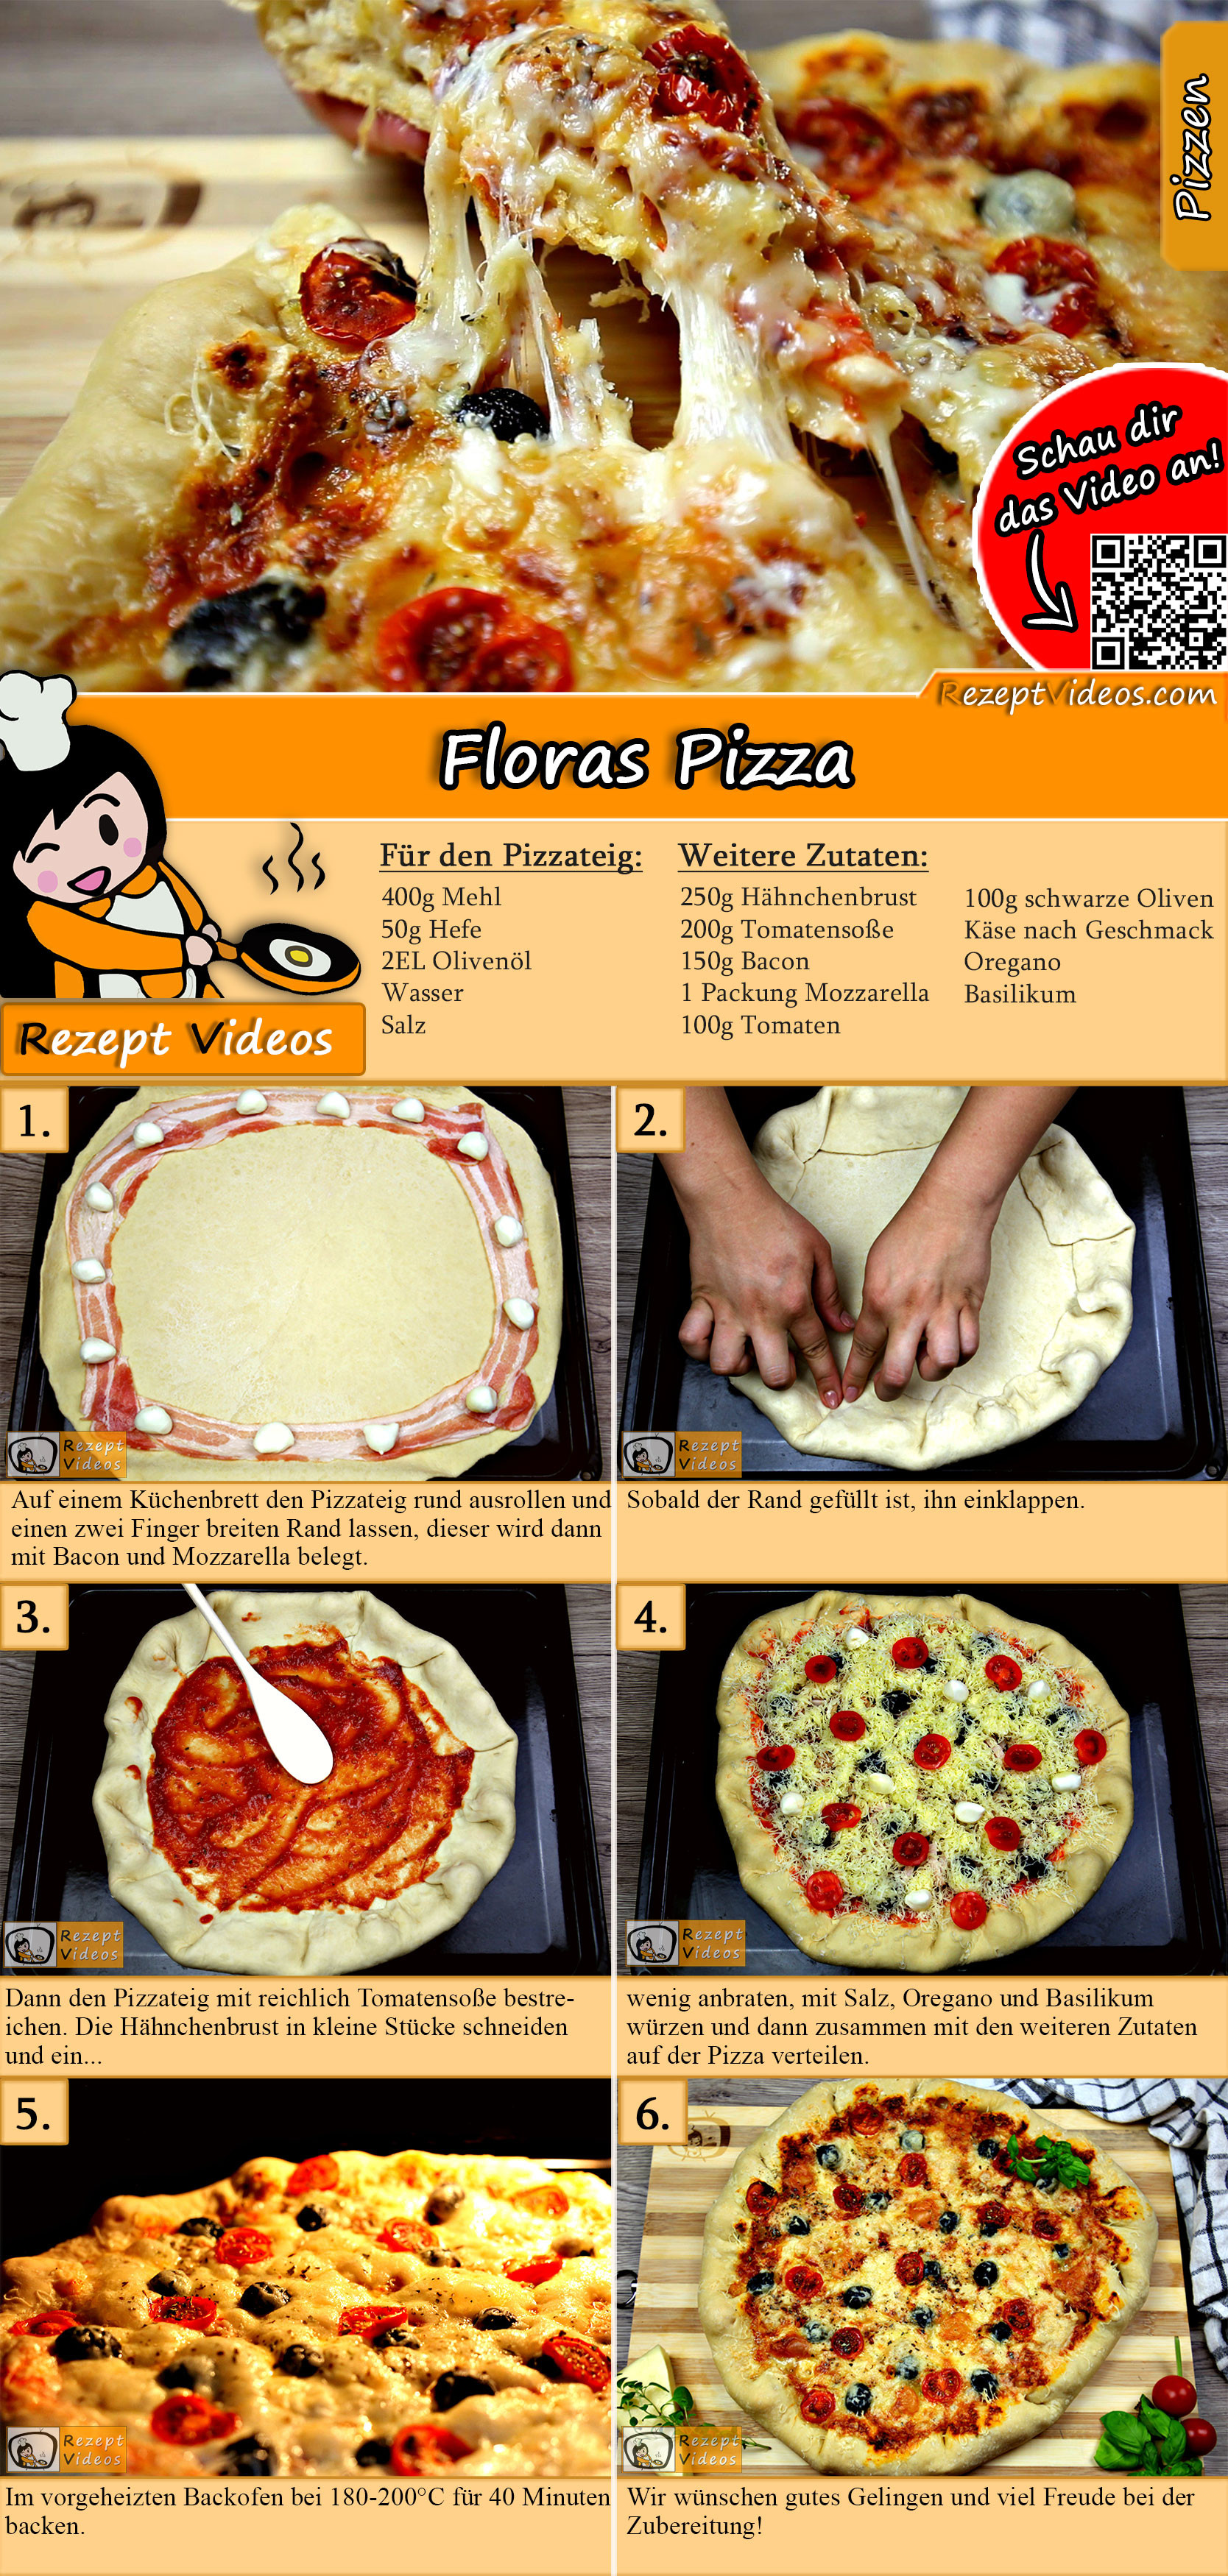 Floras Pizza Rezept mit Video